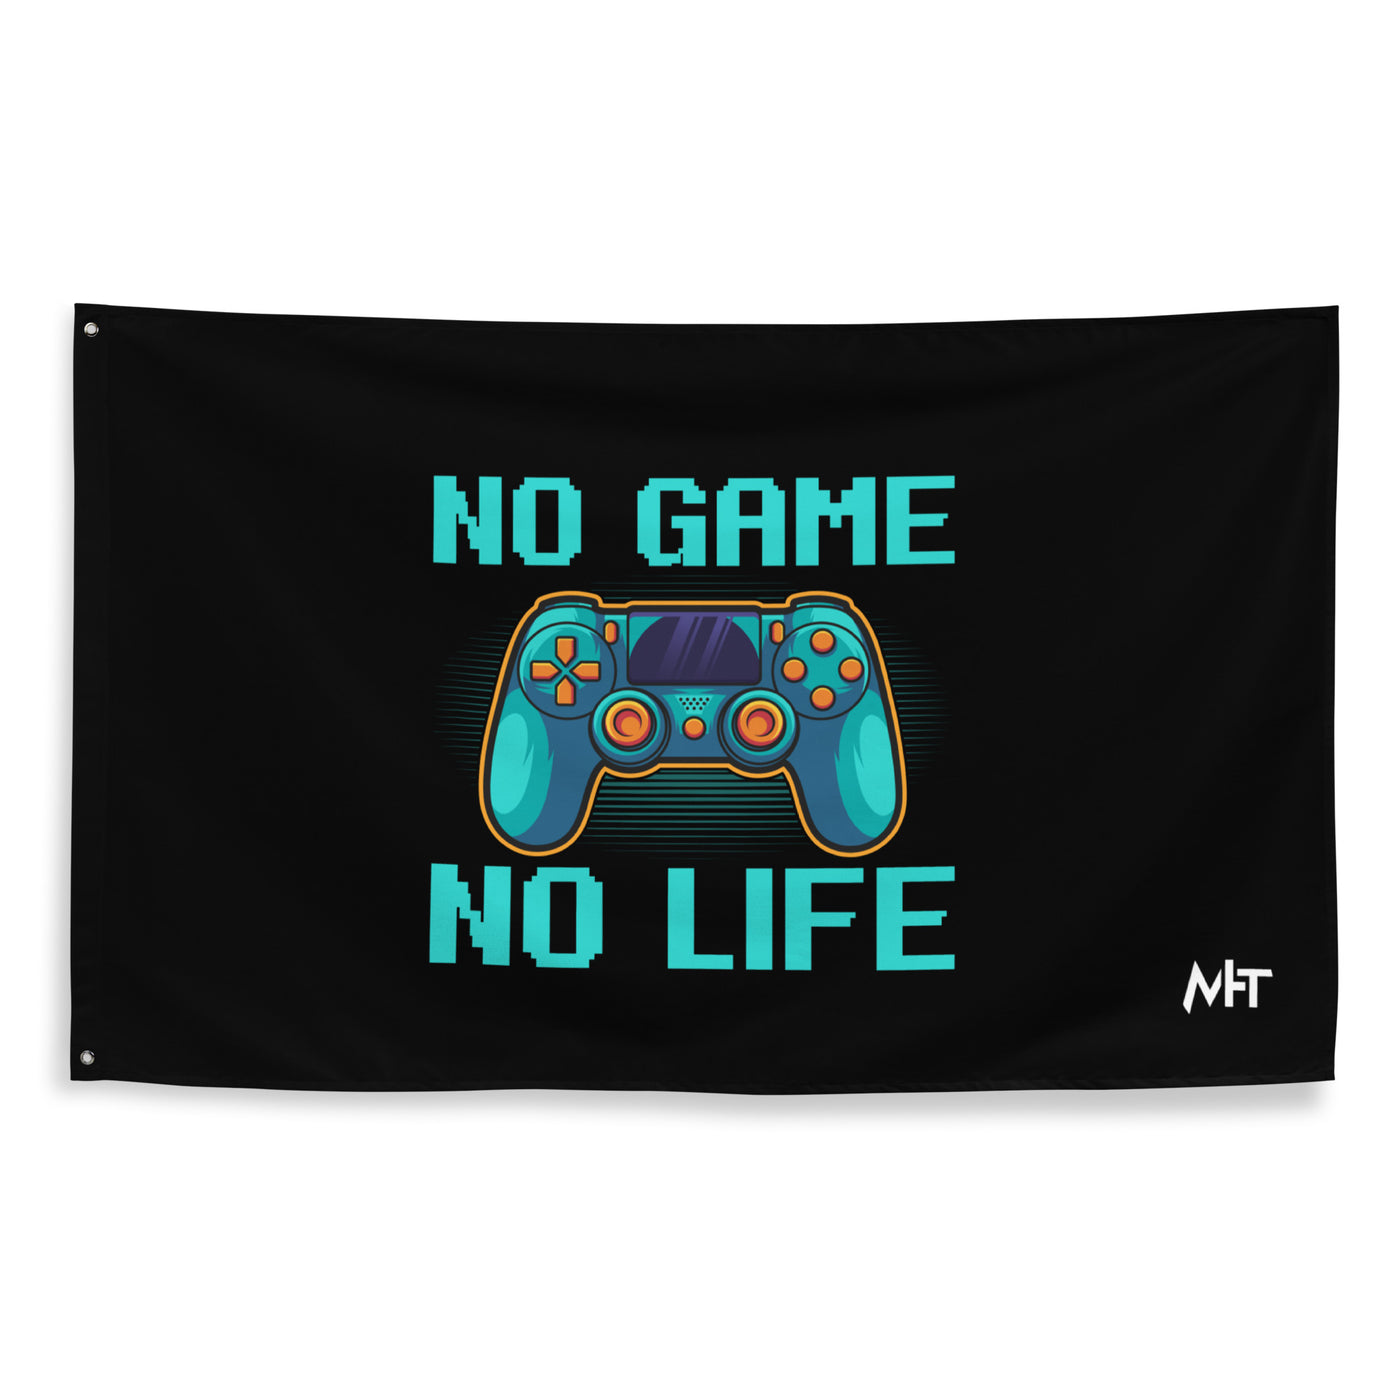 No Game; No Life - Flag